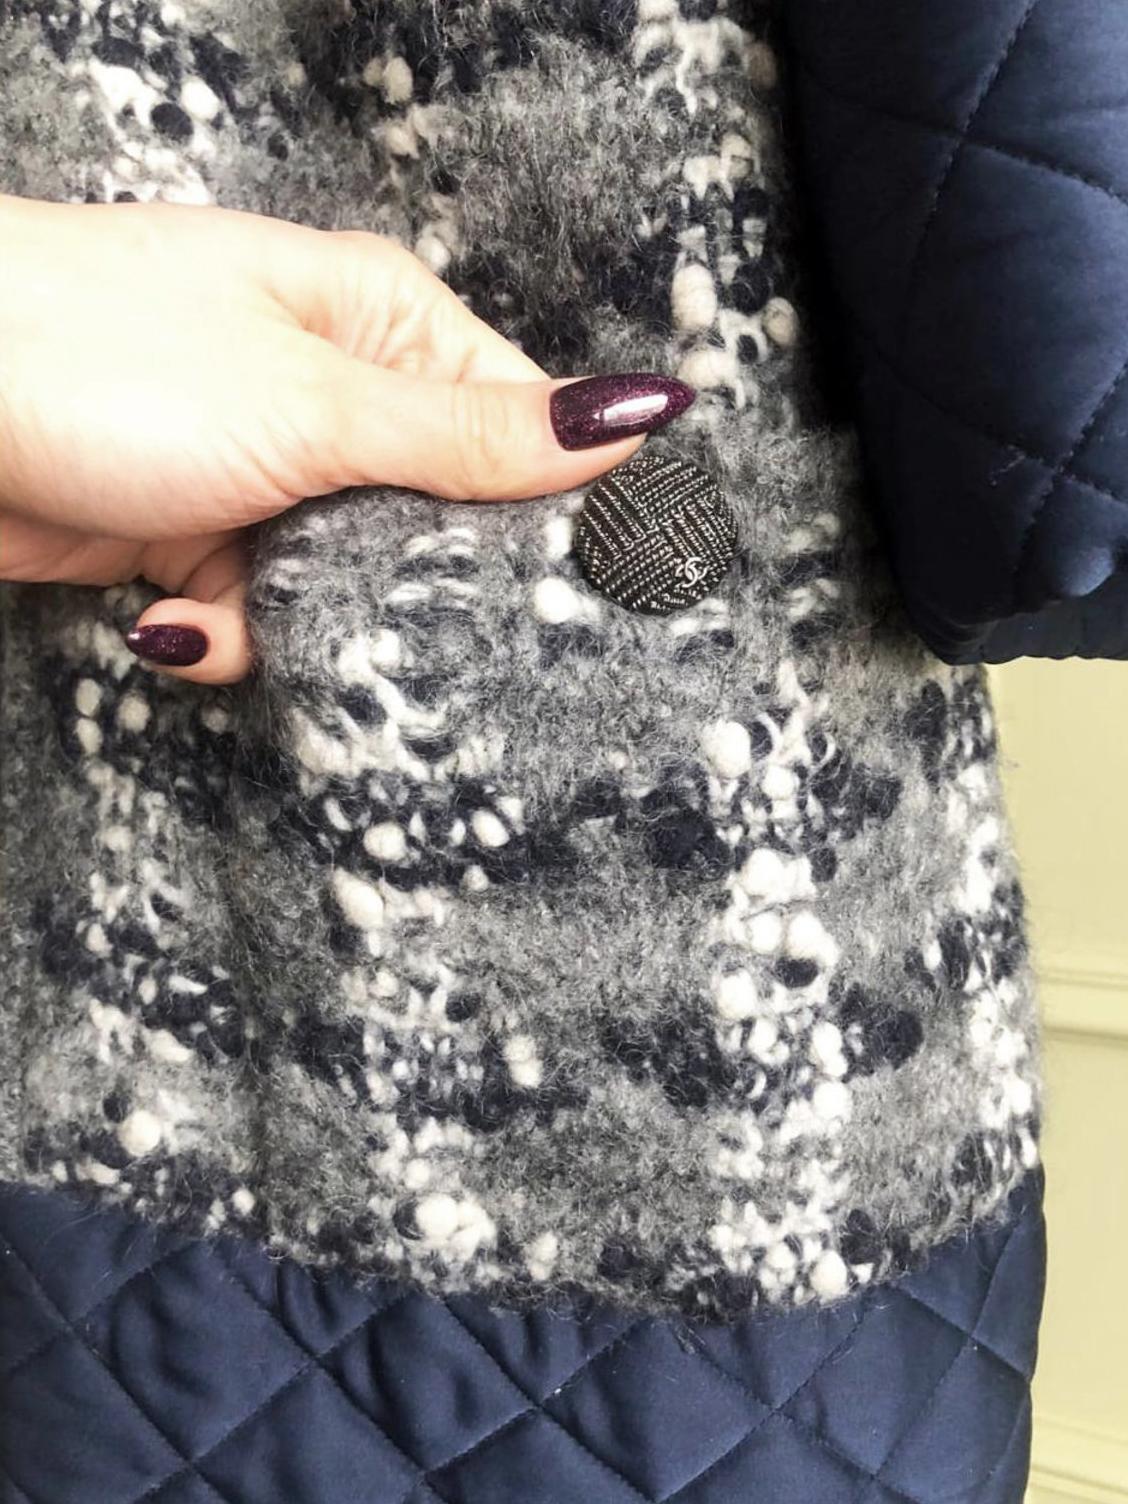 Nouveau Manteau Chanel en tweed bouclé gris avec garniture matelassée contrastée marine de la Collectional Paris / SALZBURG, 2015 Metiers d'Art
- Boutons du logo CC sur les poches
Taille 44 FR. Jamais porté.